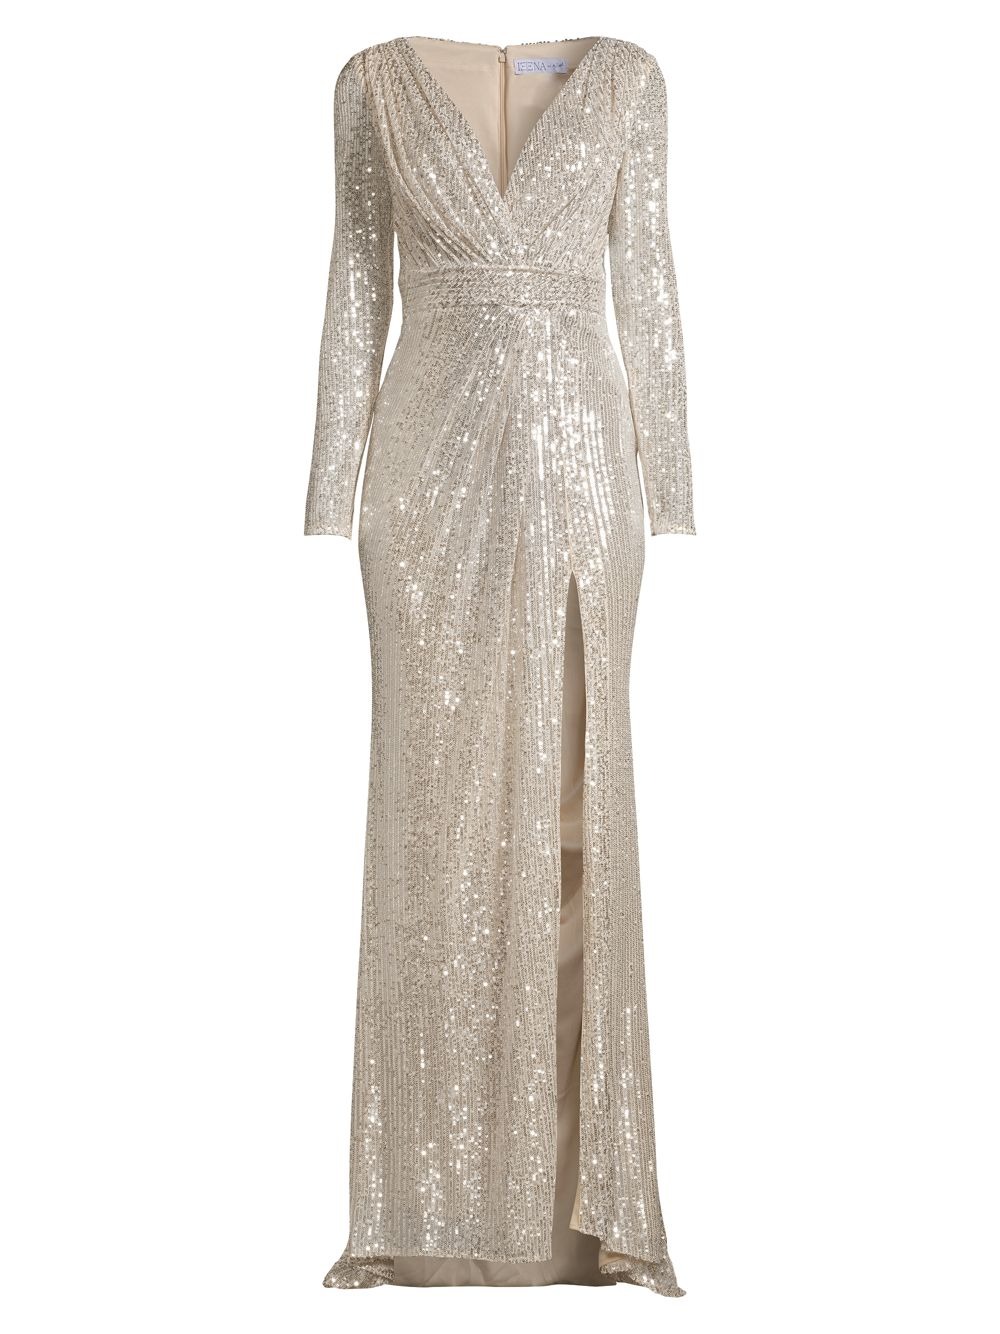 Вечернее платье с блестками Mac Duggal, серебряный (Размер US 10) платье трапециевидной формы с вышивкой пайетками mac duggal черный